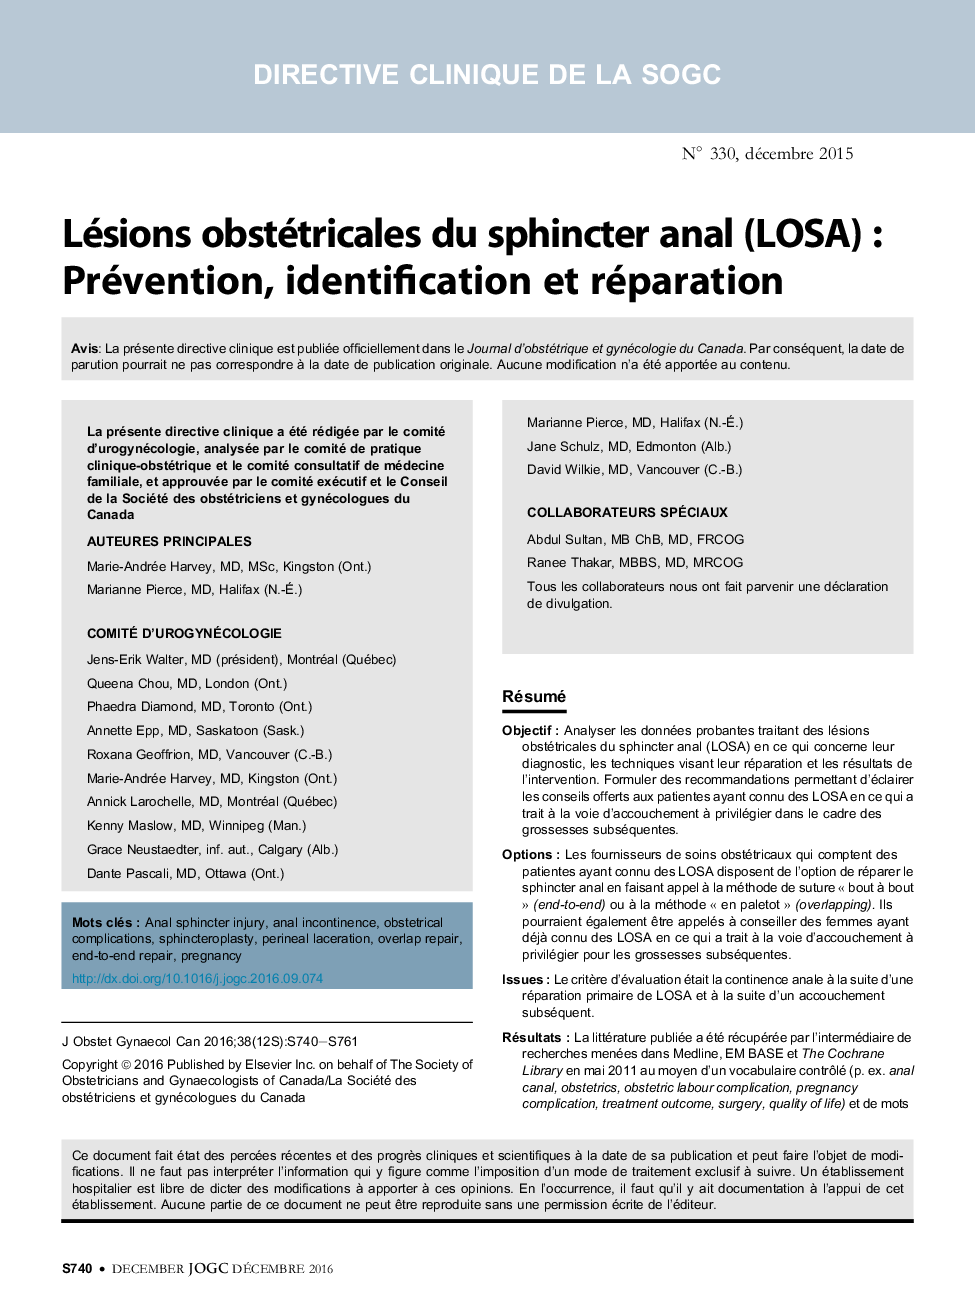 Lésions obstétricales du sphincter anal (LOSA) : Prévention, identification et réparation